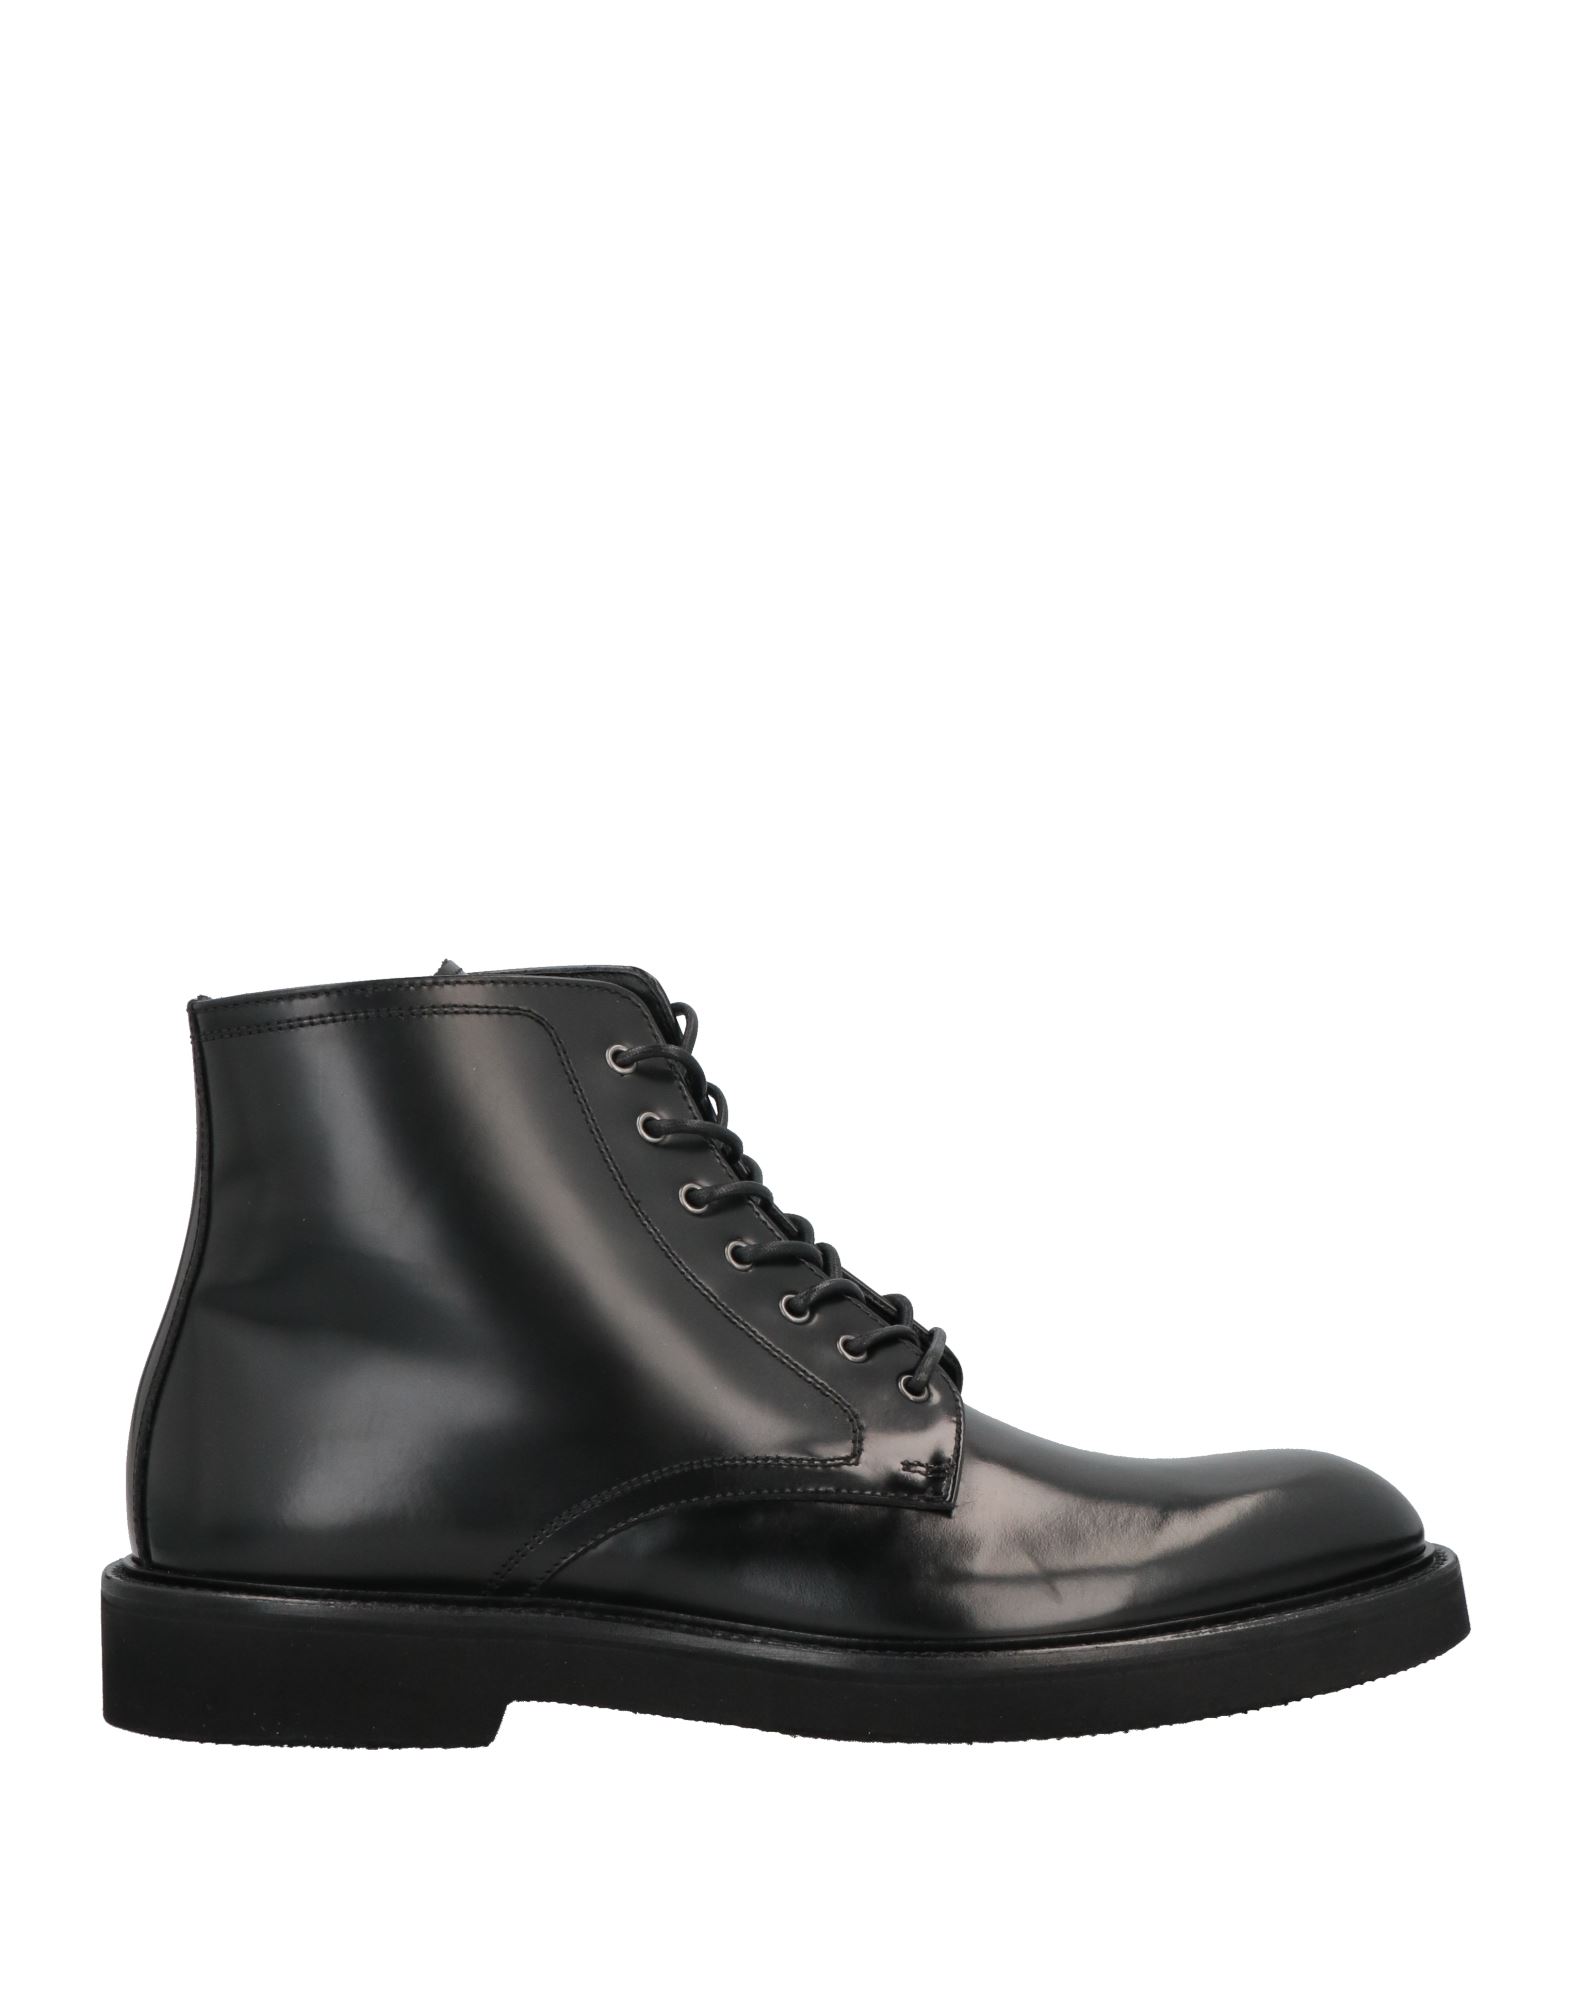 Attimonelli's Ankle Boots In Black